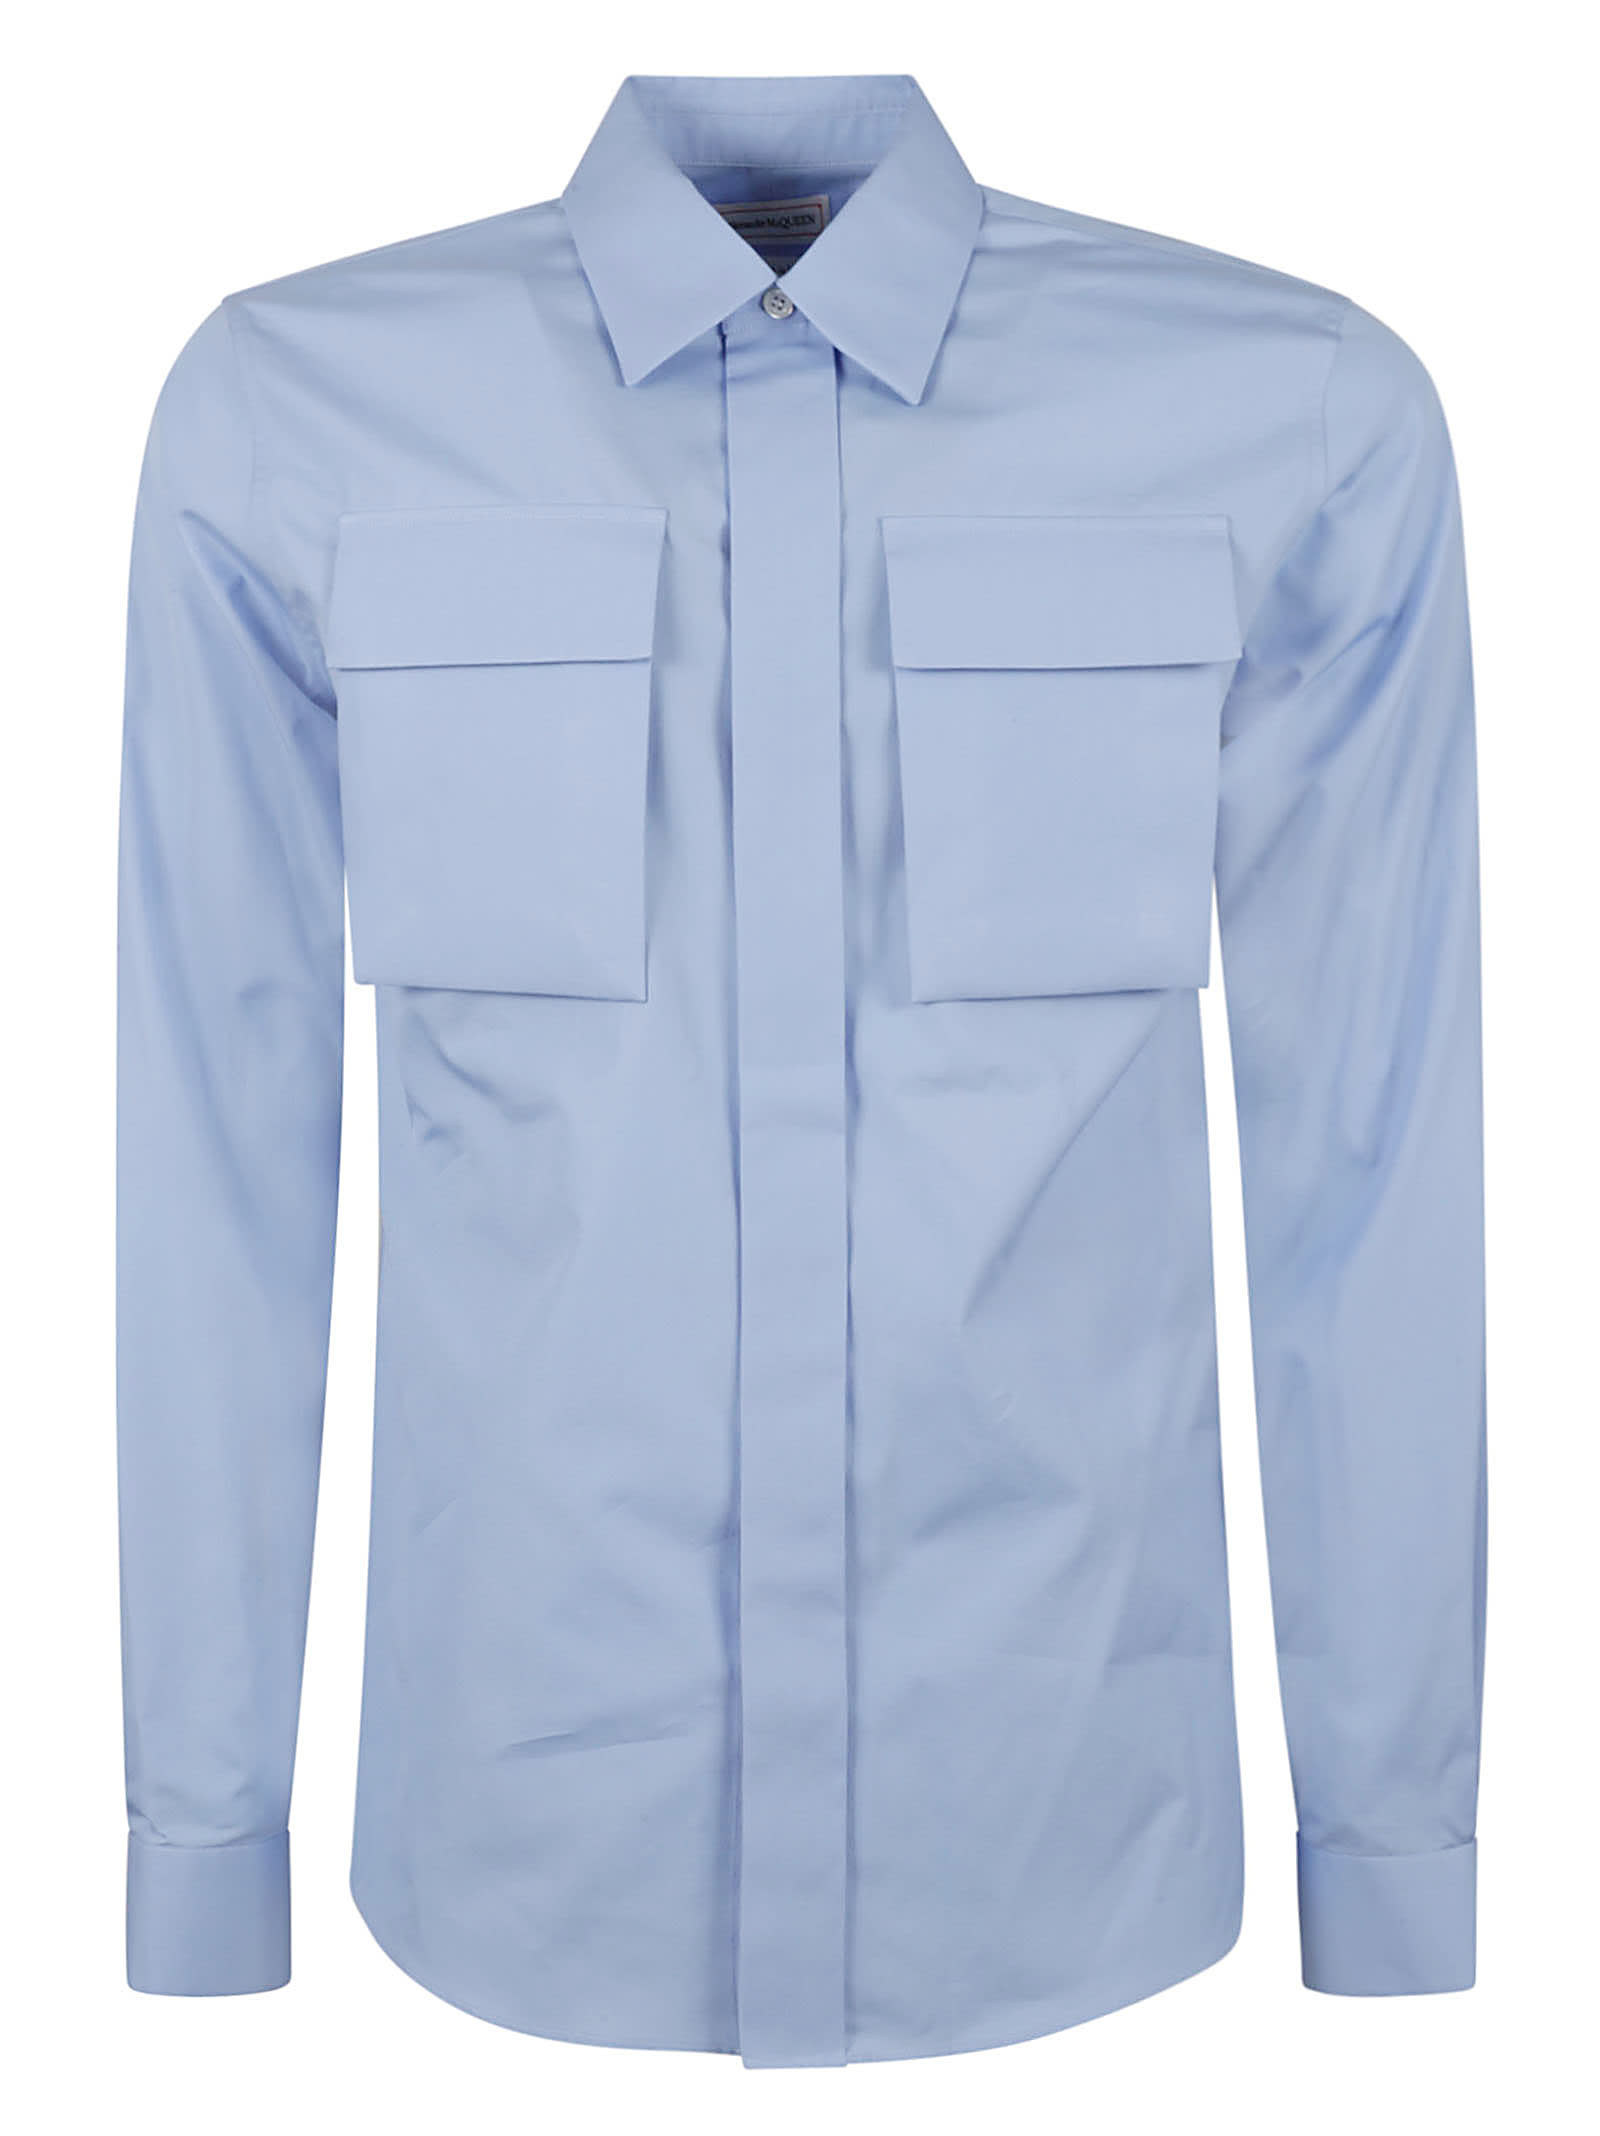 Alexander Mcqueen High Chest Pocket Shirt In Bluebell